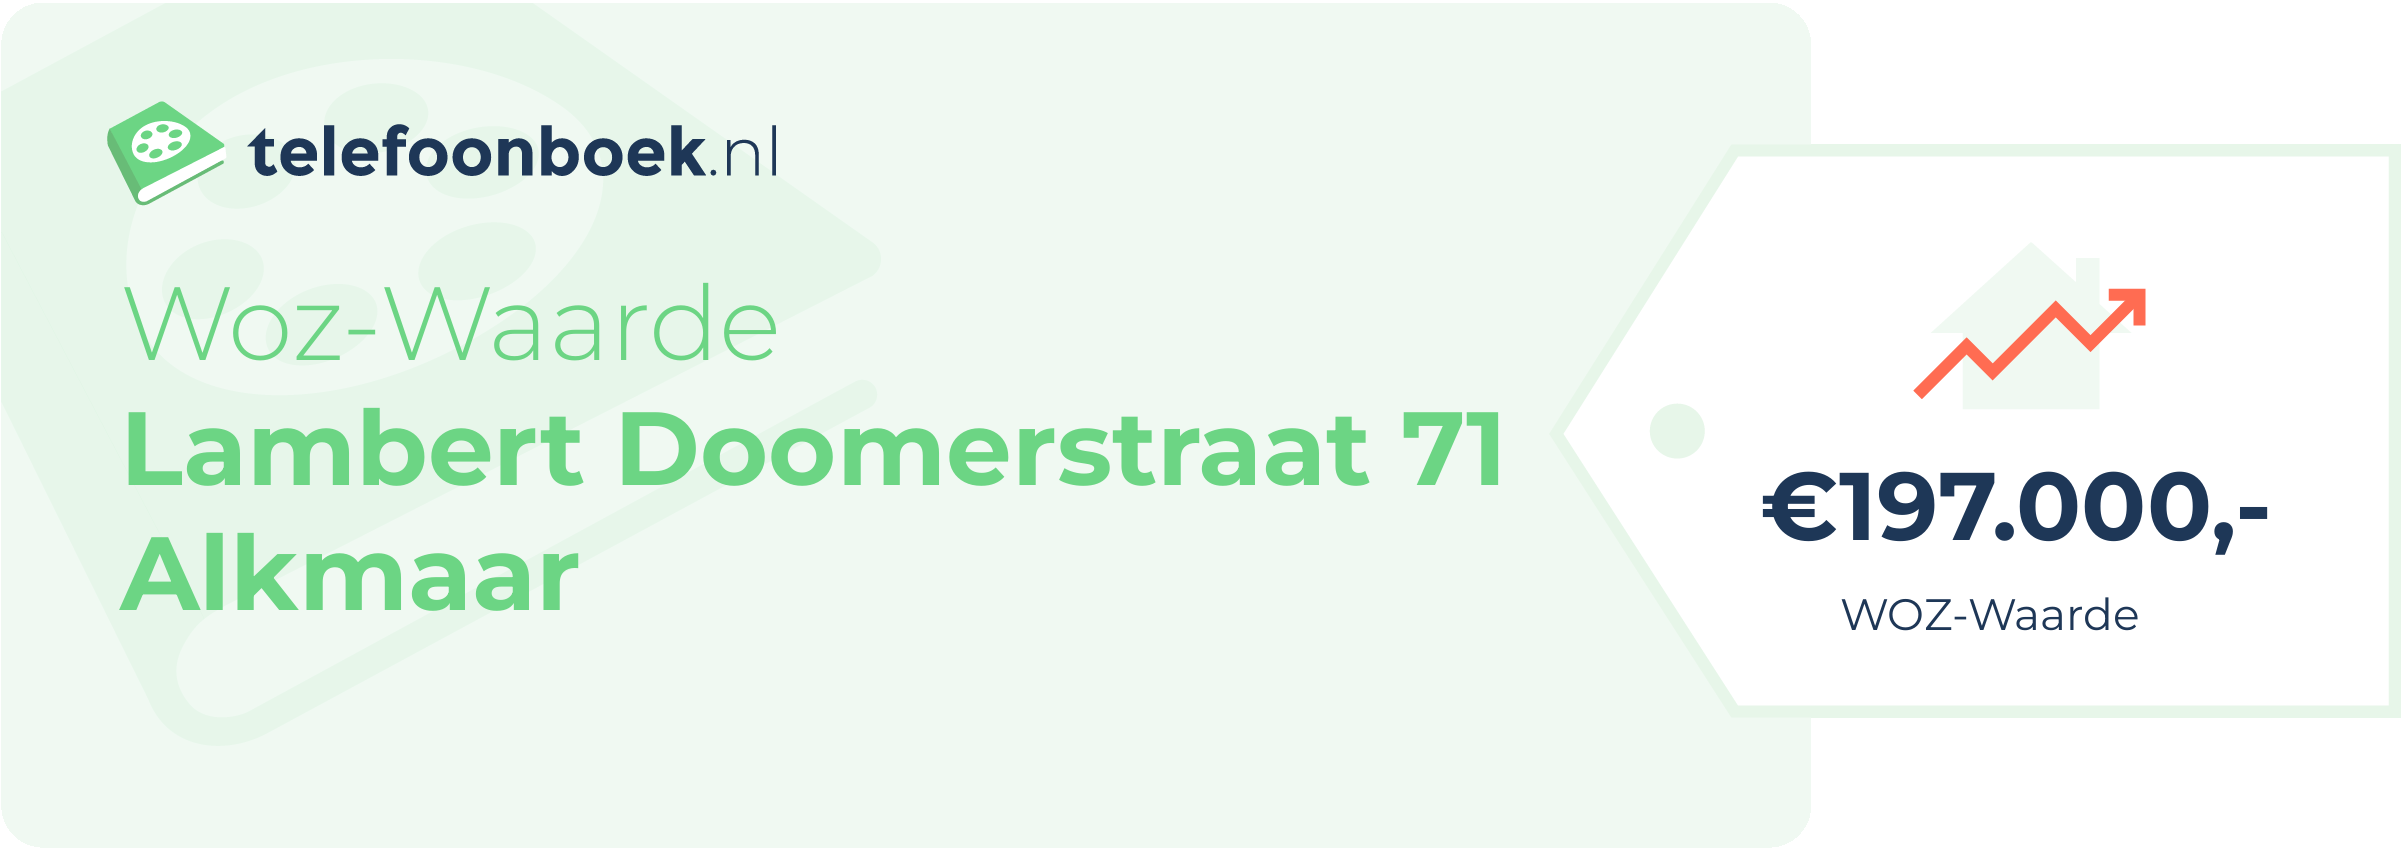 WOZ-waarde Lambert Doomerstraat 71 Alkmaar